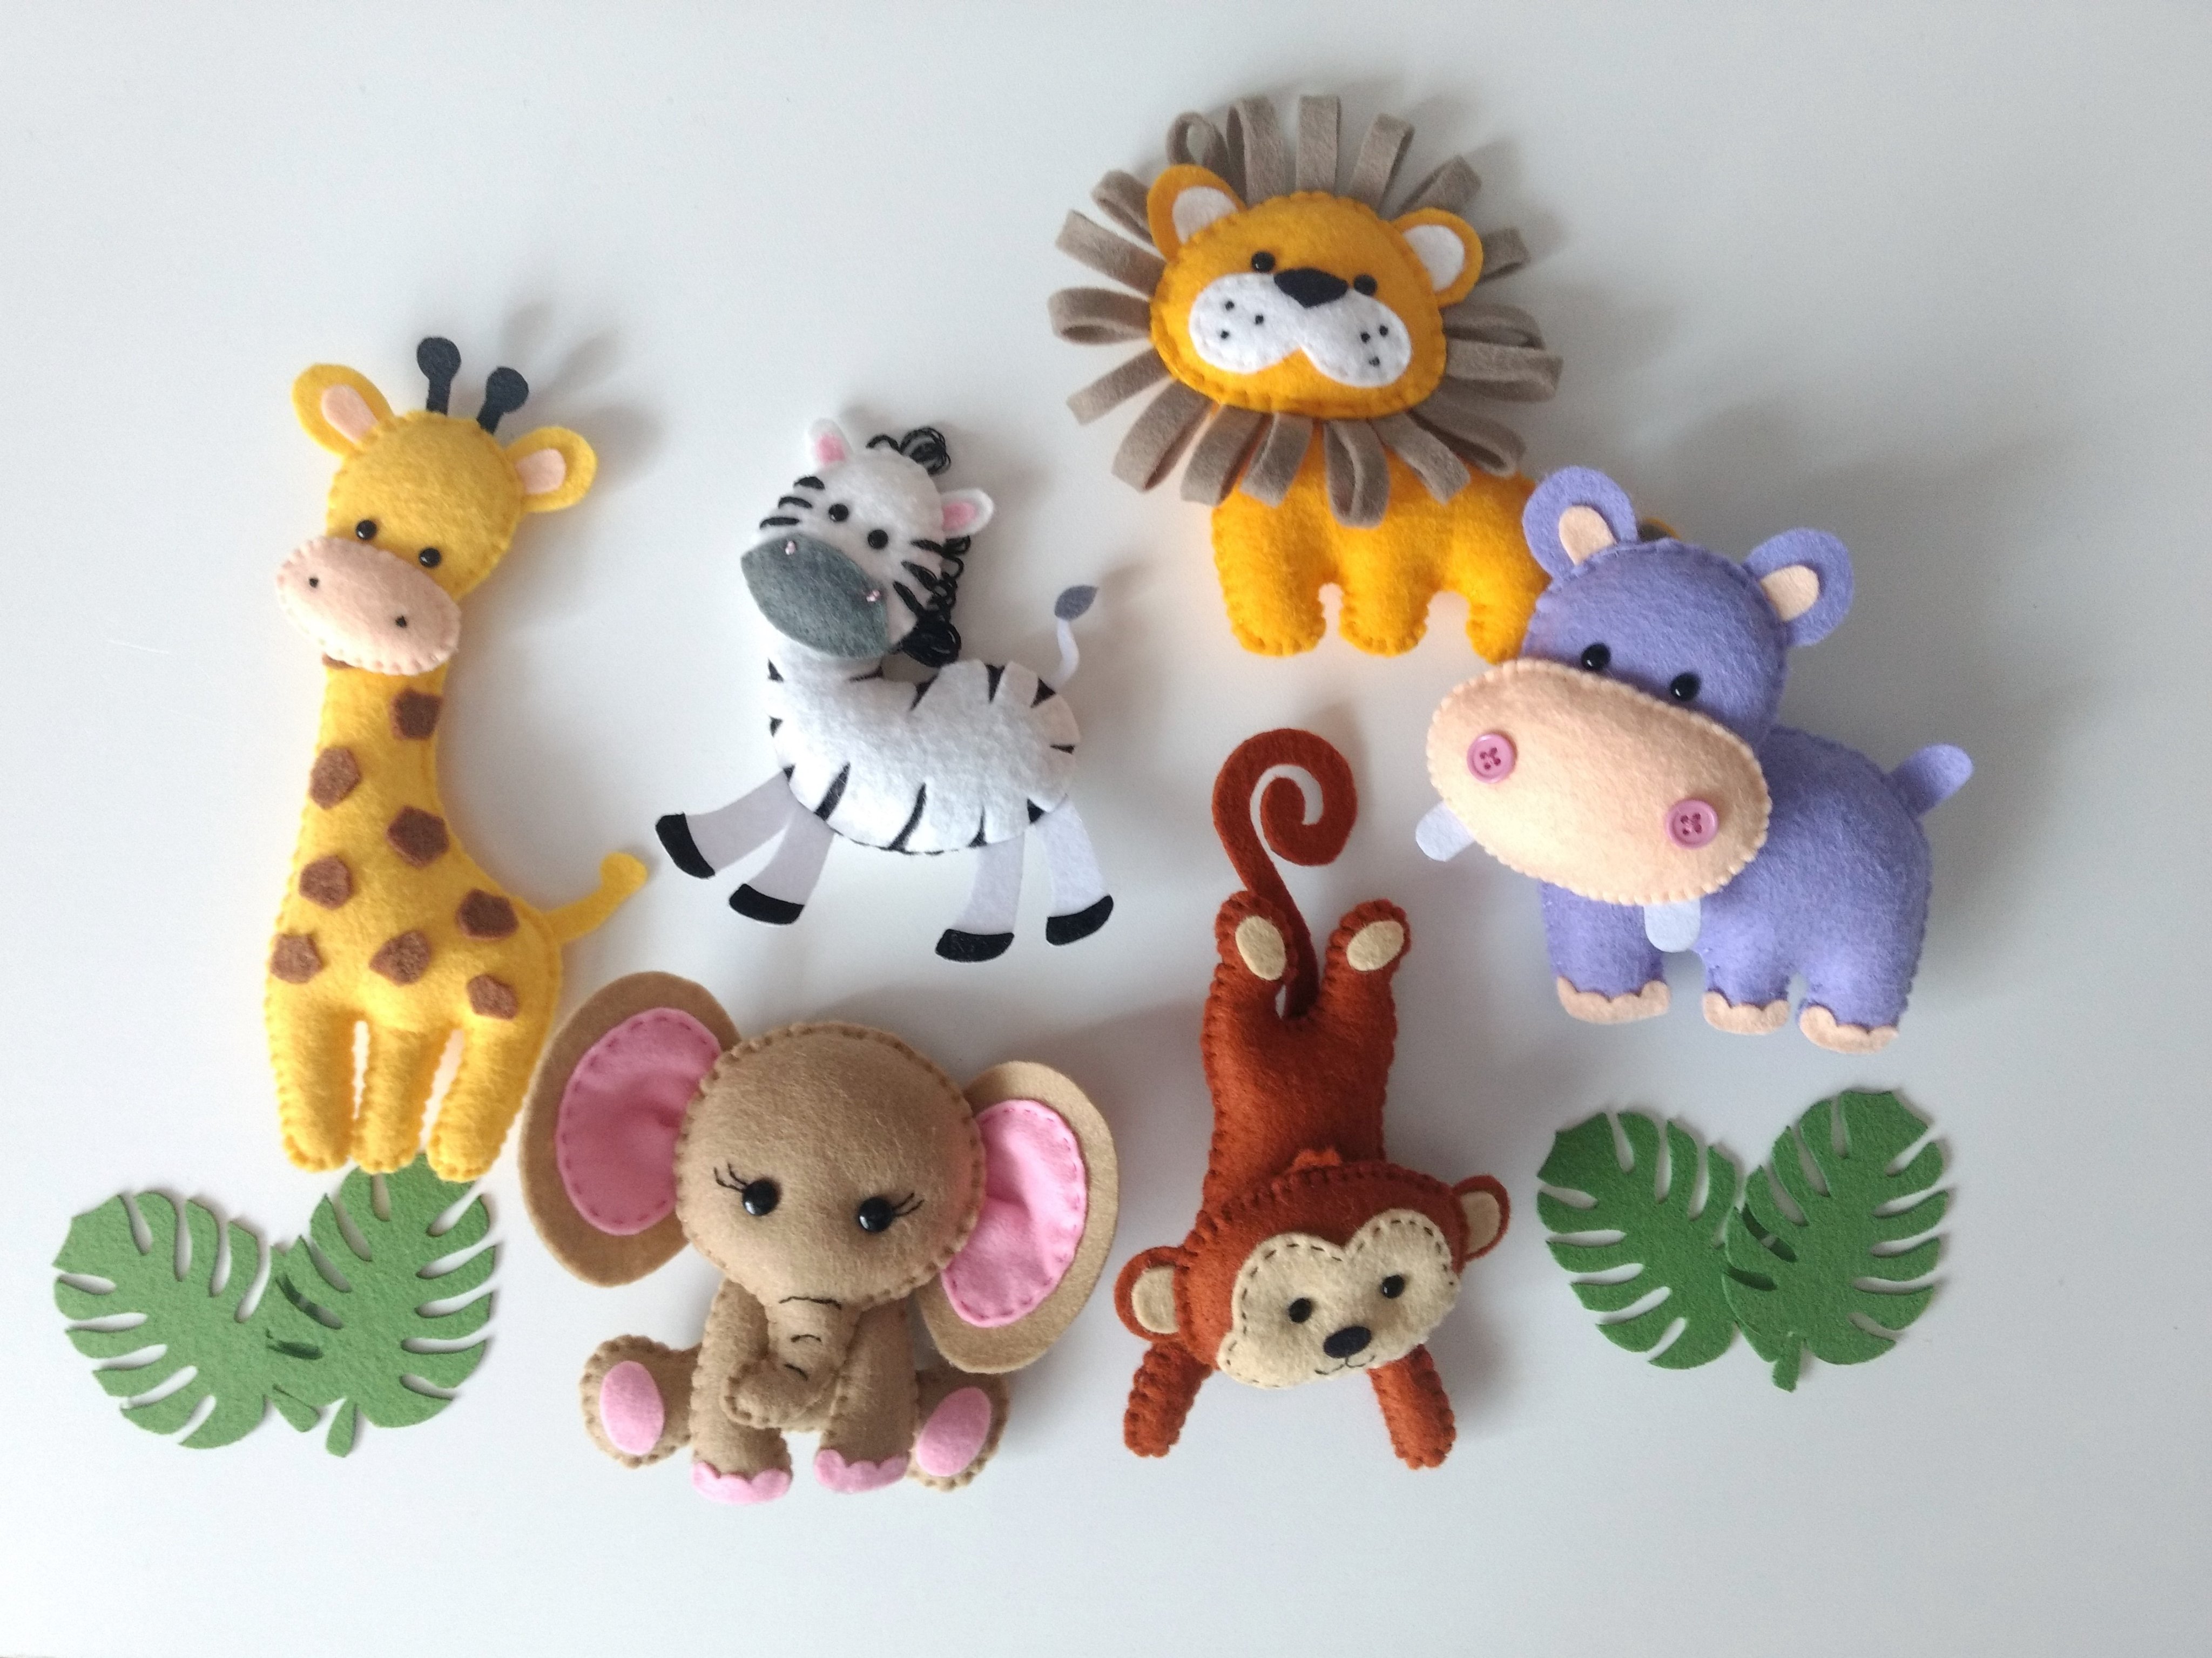 Ten Little Bees on X: Felt animals Safari animals Stuffed animals Felt  décor Jungle animals felt Handmade felt toys Zoo animals    / X